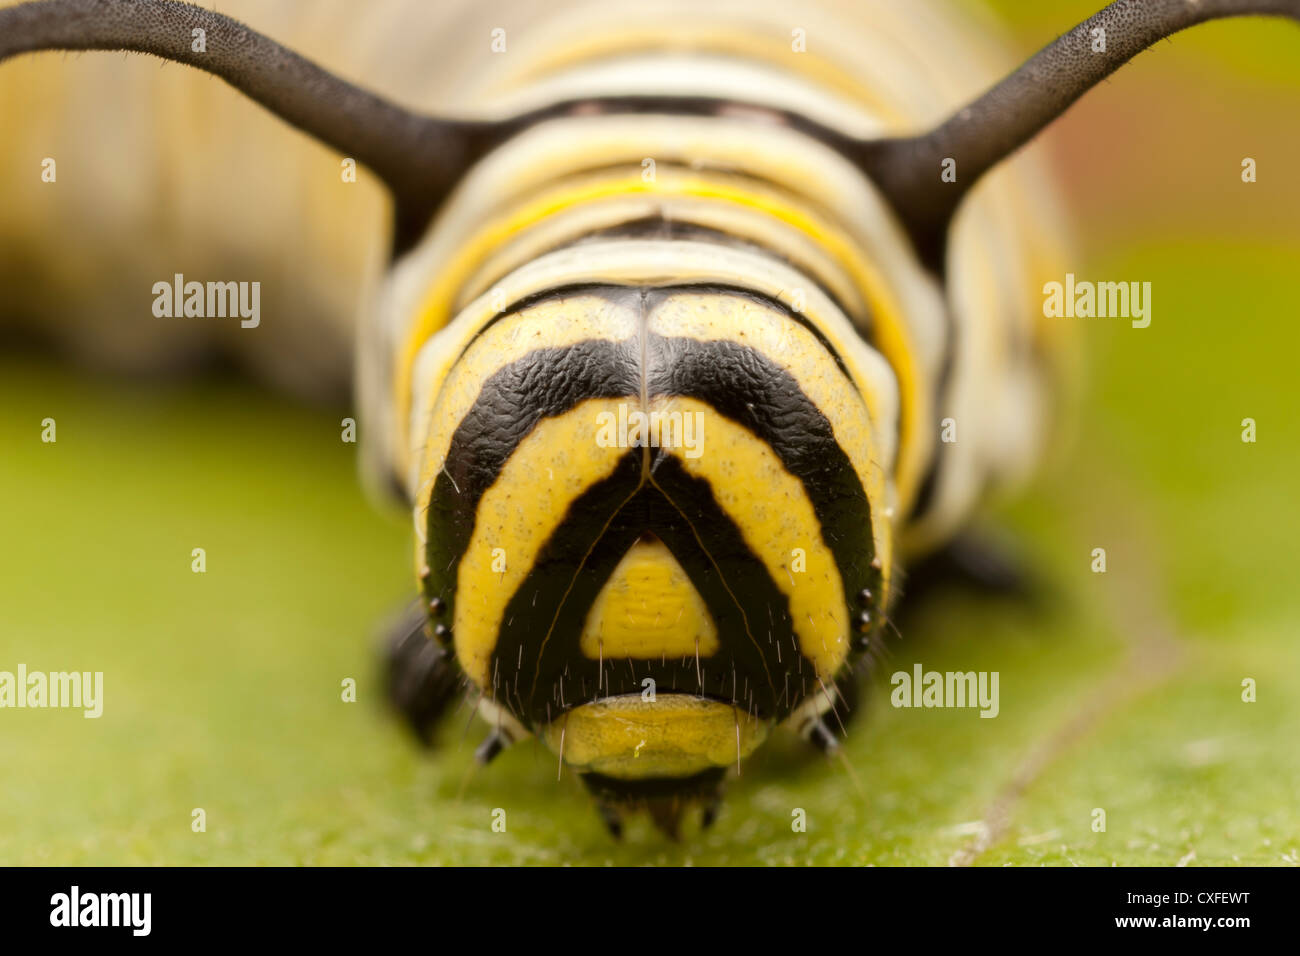 Una vista frontale della testa di un quinto instar farfalla monarca (Danaus Plexippus) caterpillar (larva) Foto Stock